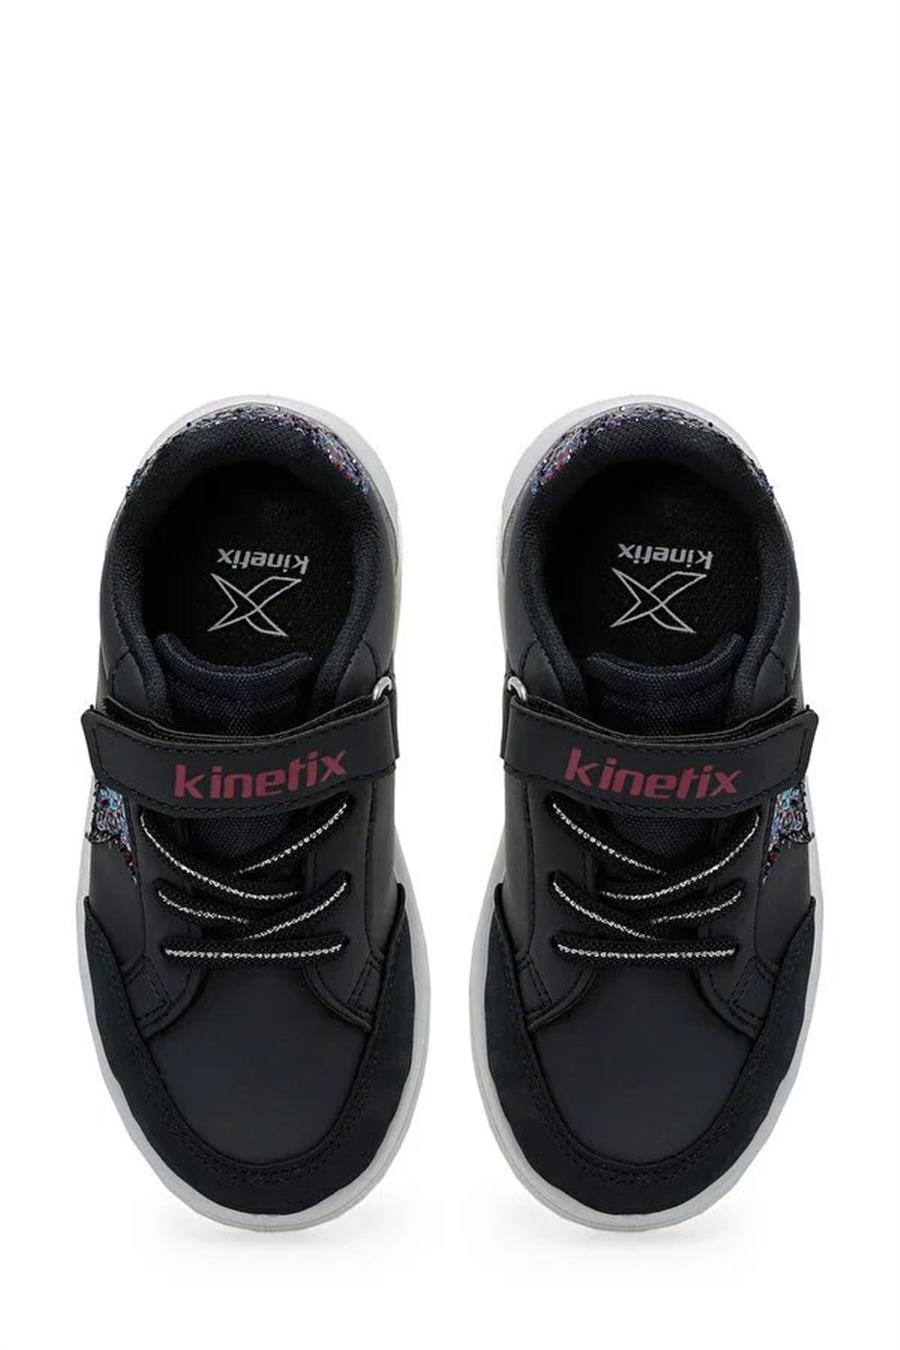 Kinetix Malıbu Pu Gırl 3Pr Lacivert Mor Patik Kız Çocuk Sneaker Ayakkabı